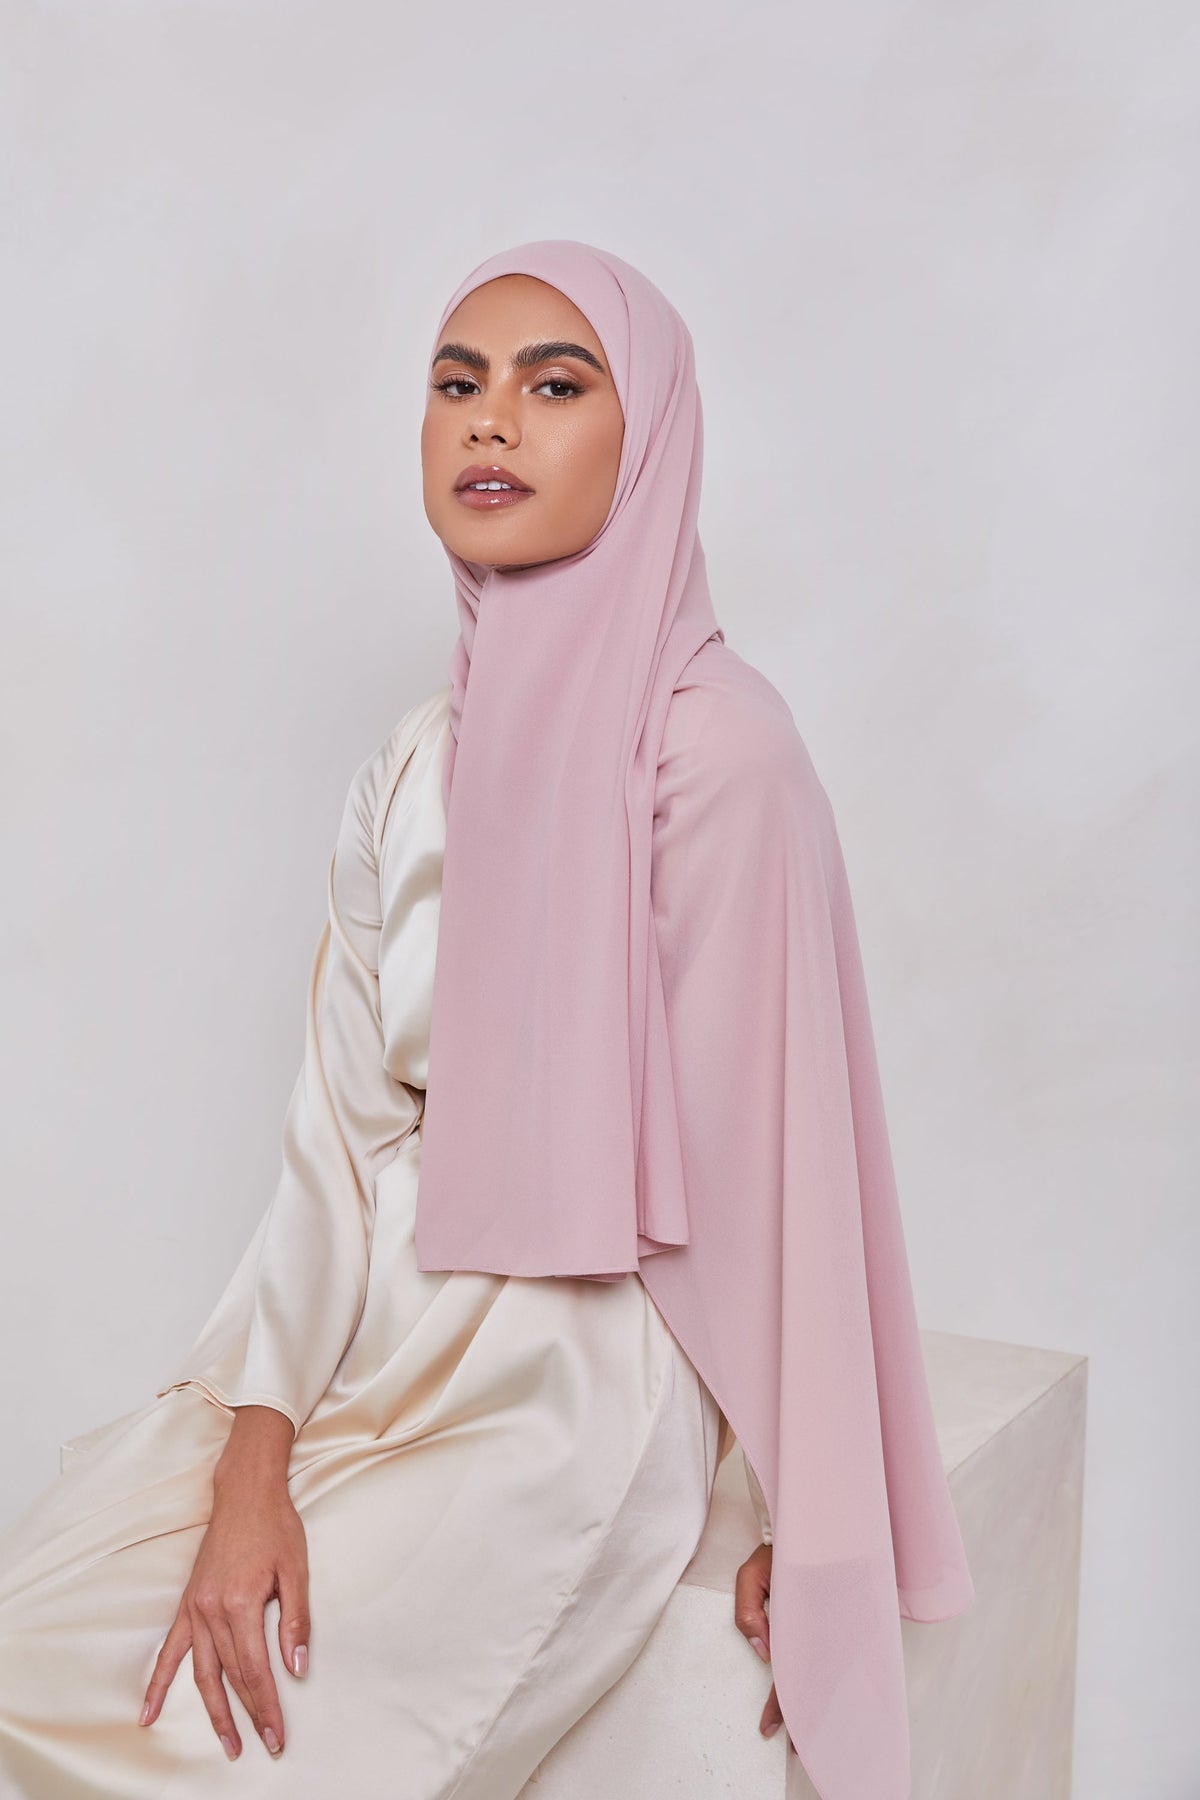 Essential Chiffon Hijab - Dusty Pink Scarves & Shawls epschoolboard 